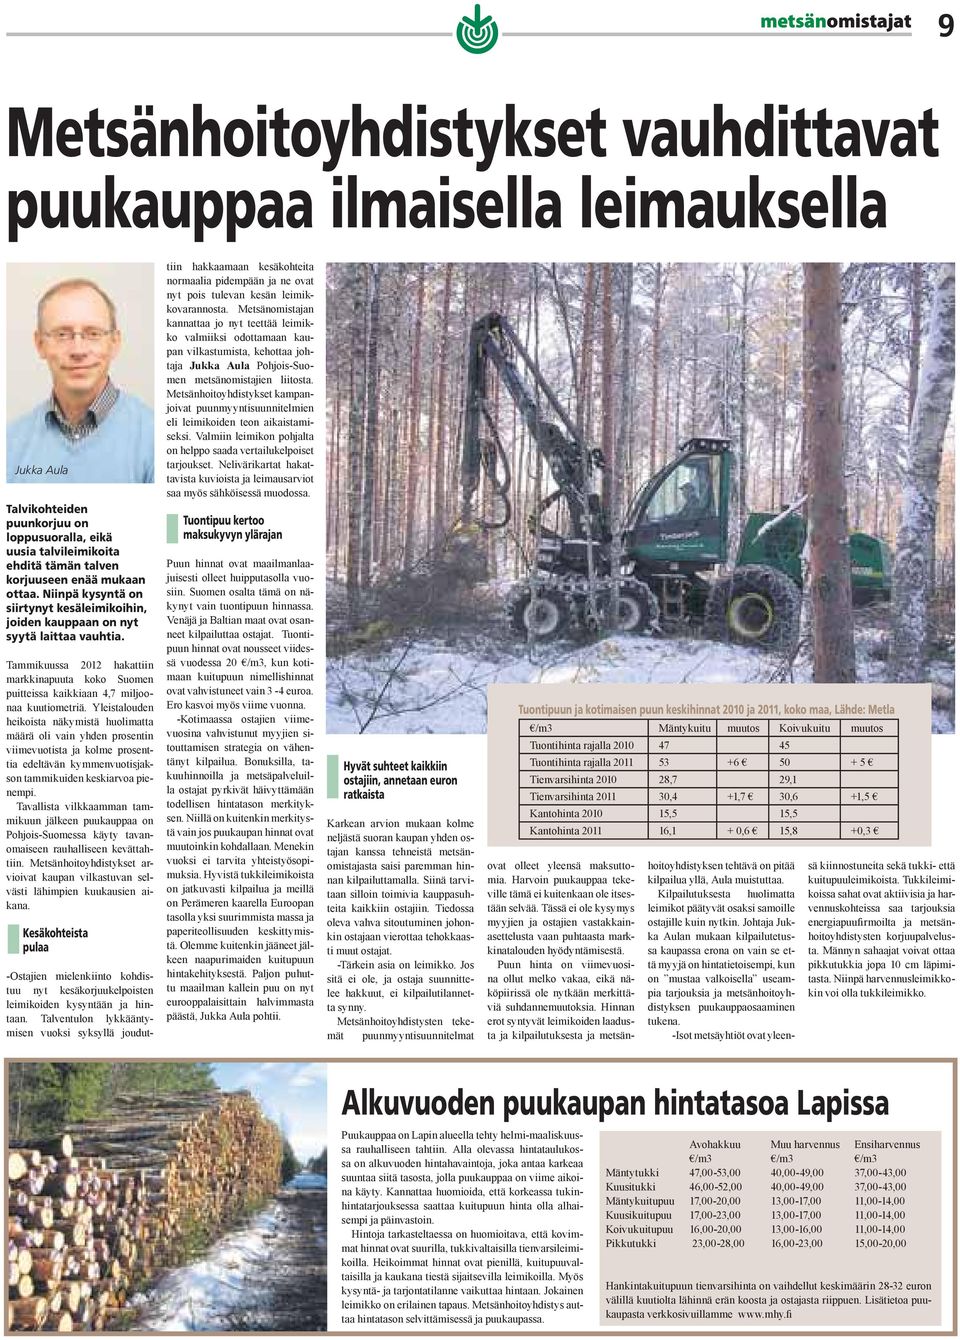 Tammikuussa 2012 hakattiin markkinapuuta koko Suomen puitteissa kaikkiaan 4,7 miljoonaa kuutiometriä.